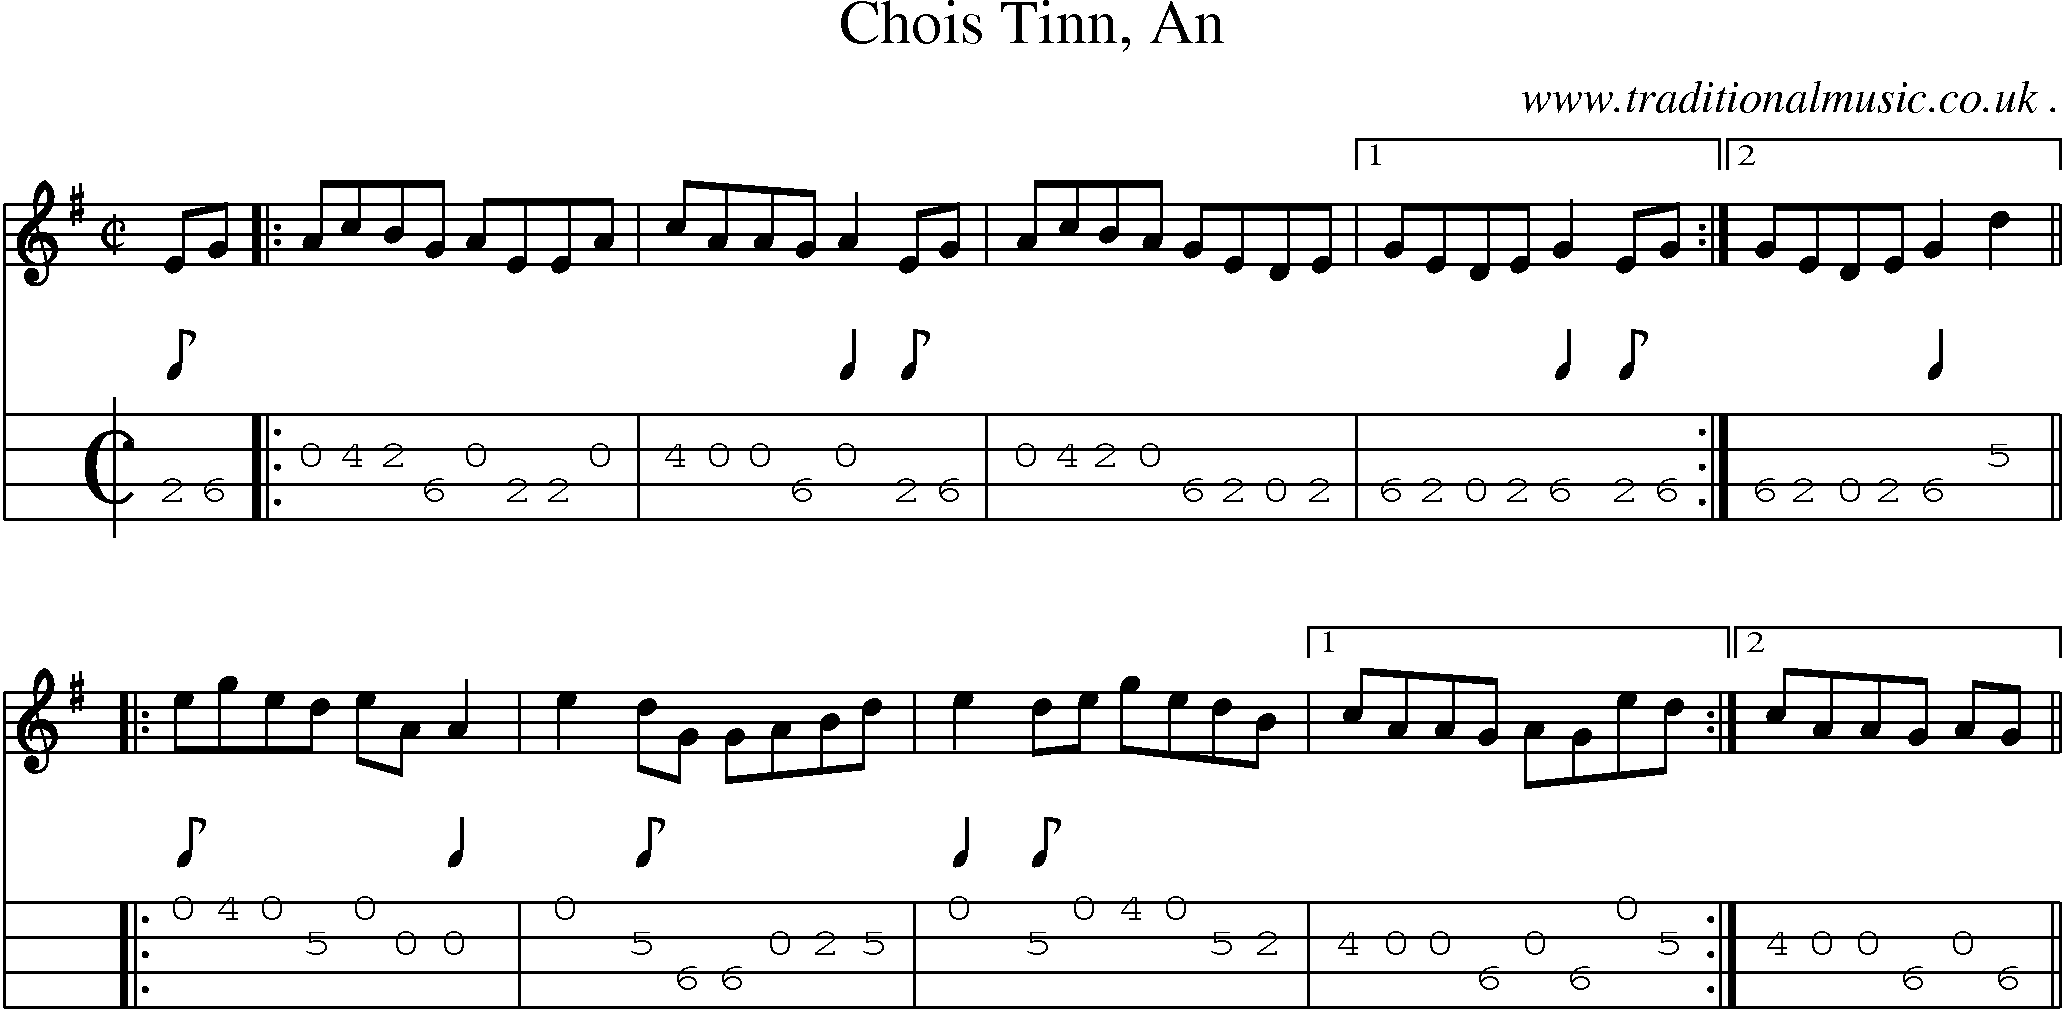 Sheet-Music and Mandolin Tabs for Chois Tinn An